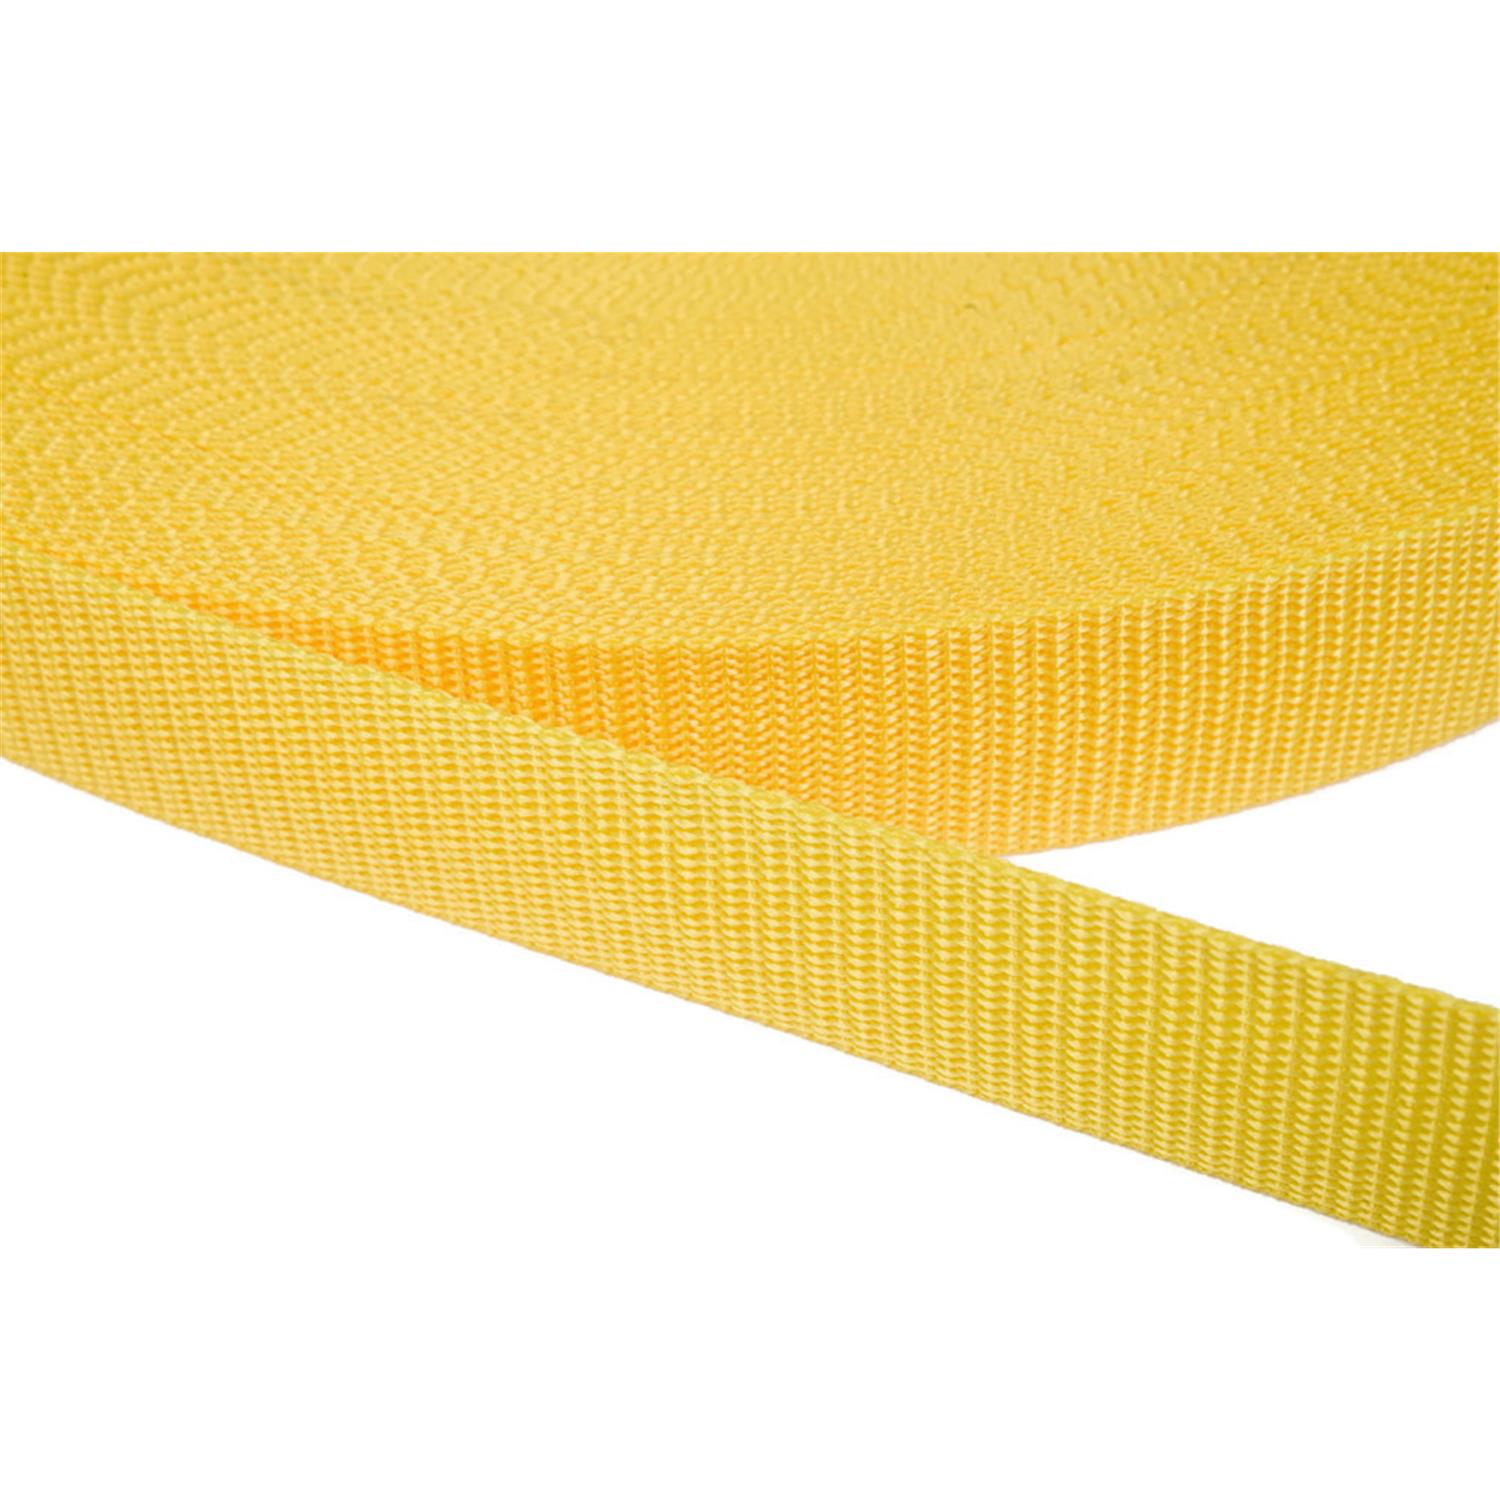 Gurtband 20mm breit aus Polypropylen in 41 Farben 10 - gelb 06 Meter